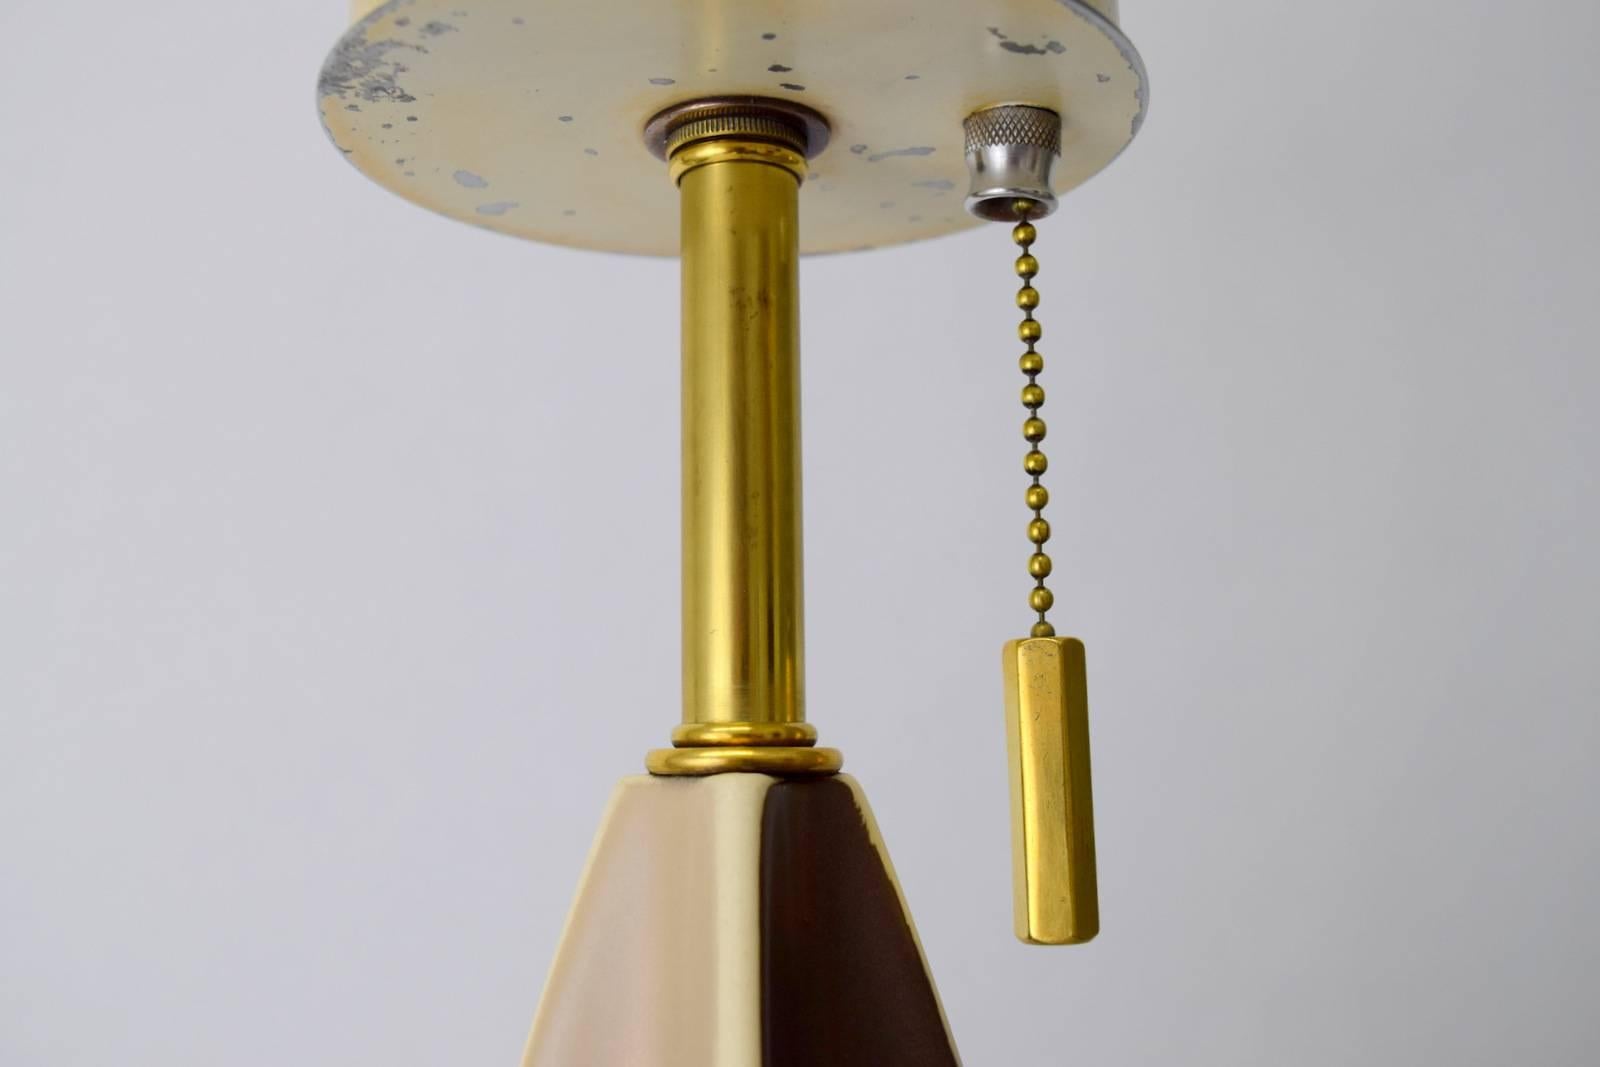 Stoneware Gerald Thurston Fin Lamp for Lightolier